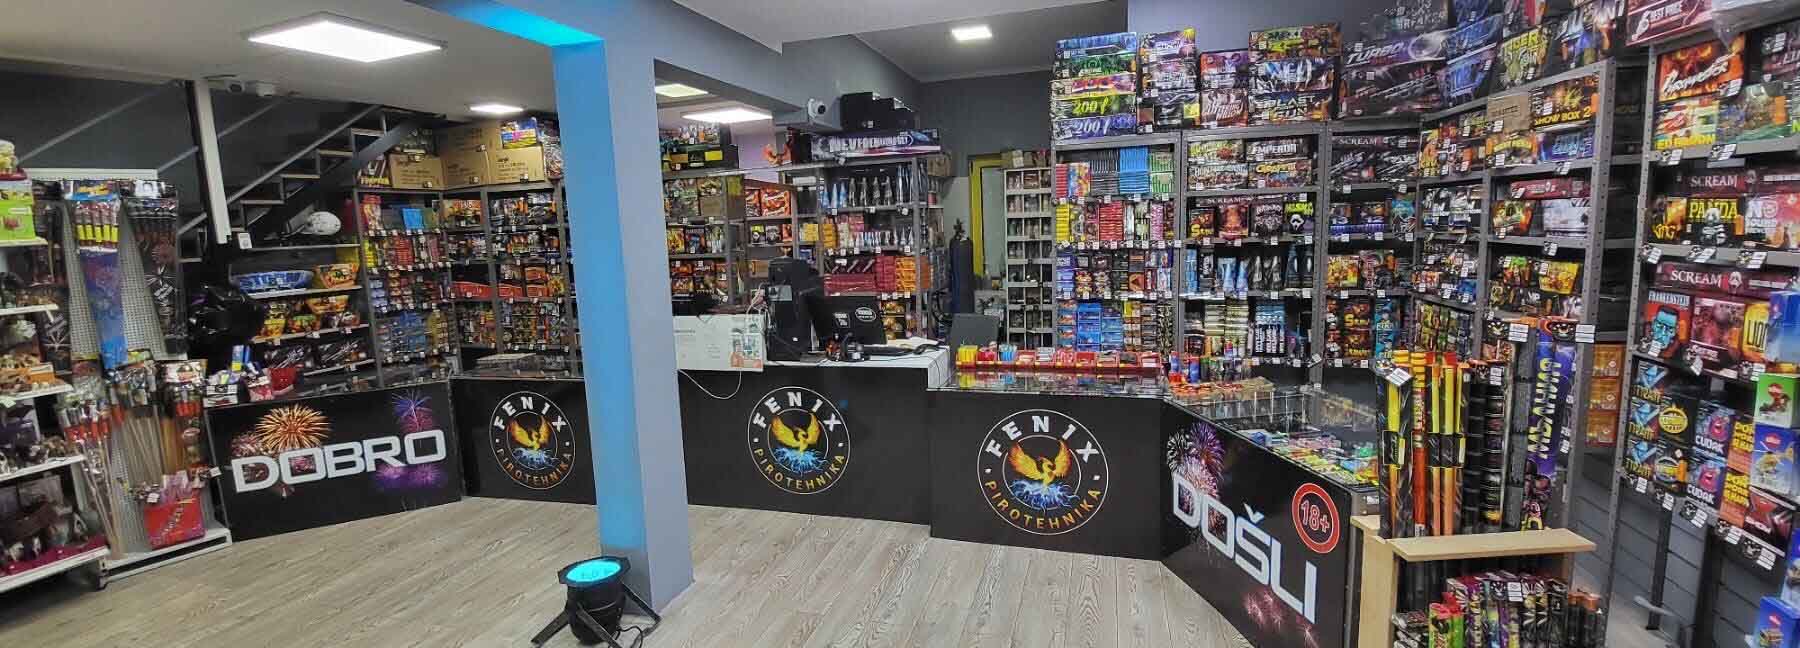 Maloprodaja pirotehnike - Najveći izbor pirotehnike Beograd